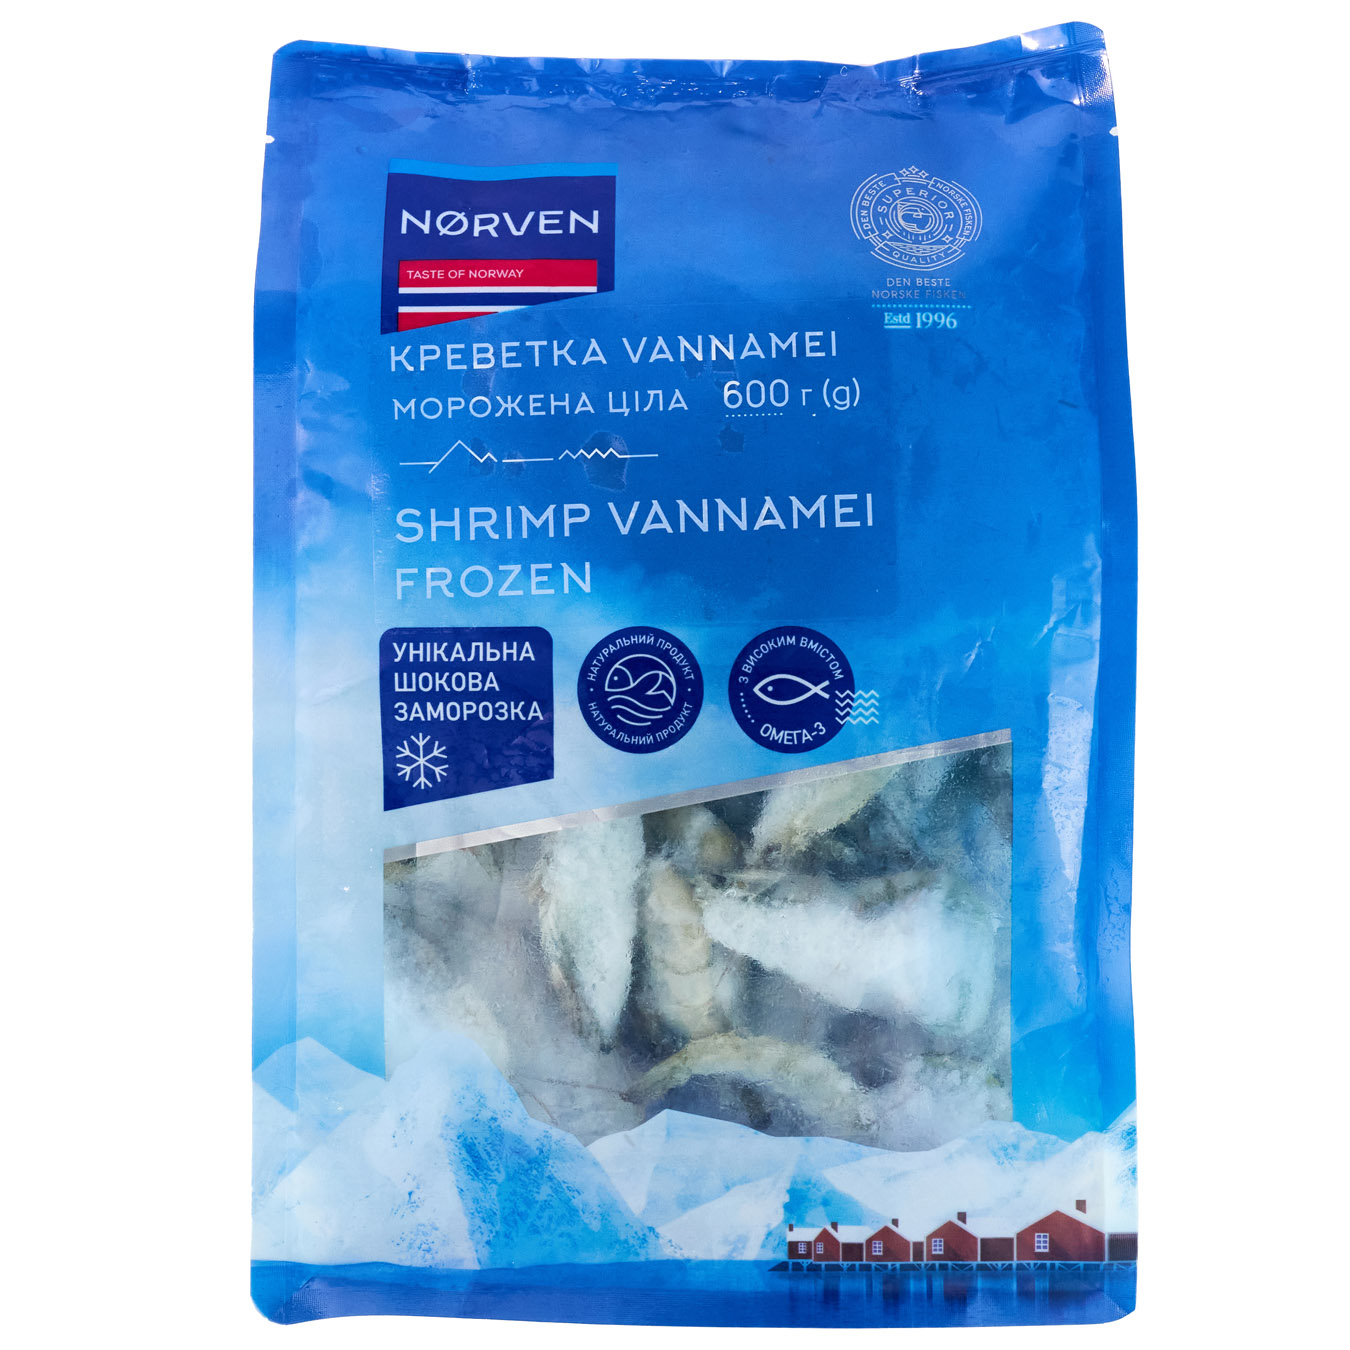 Norven Frozen Whole Glazed Vannamei Shrimp 600g